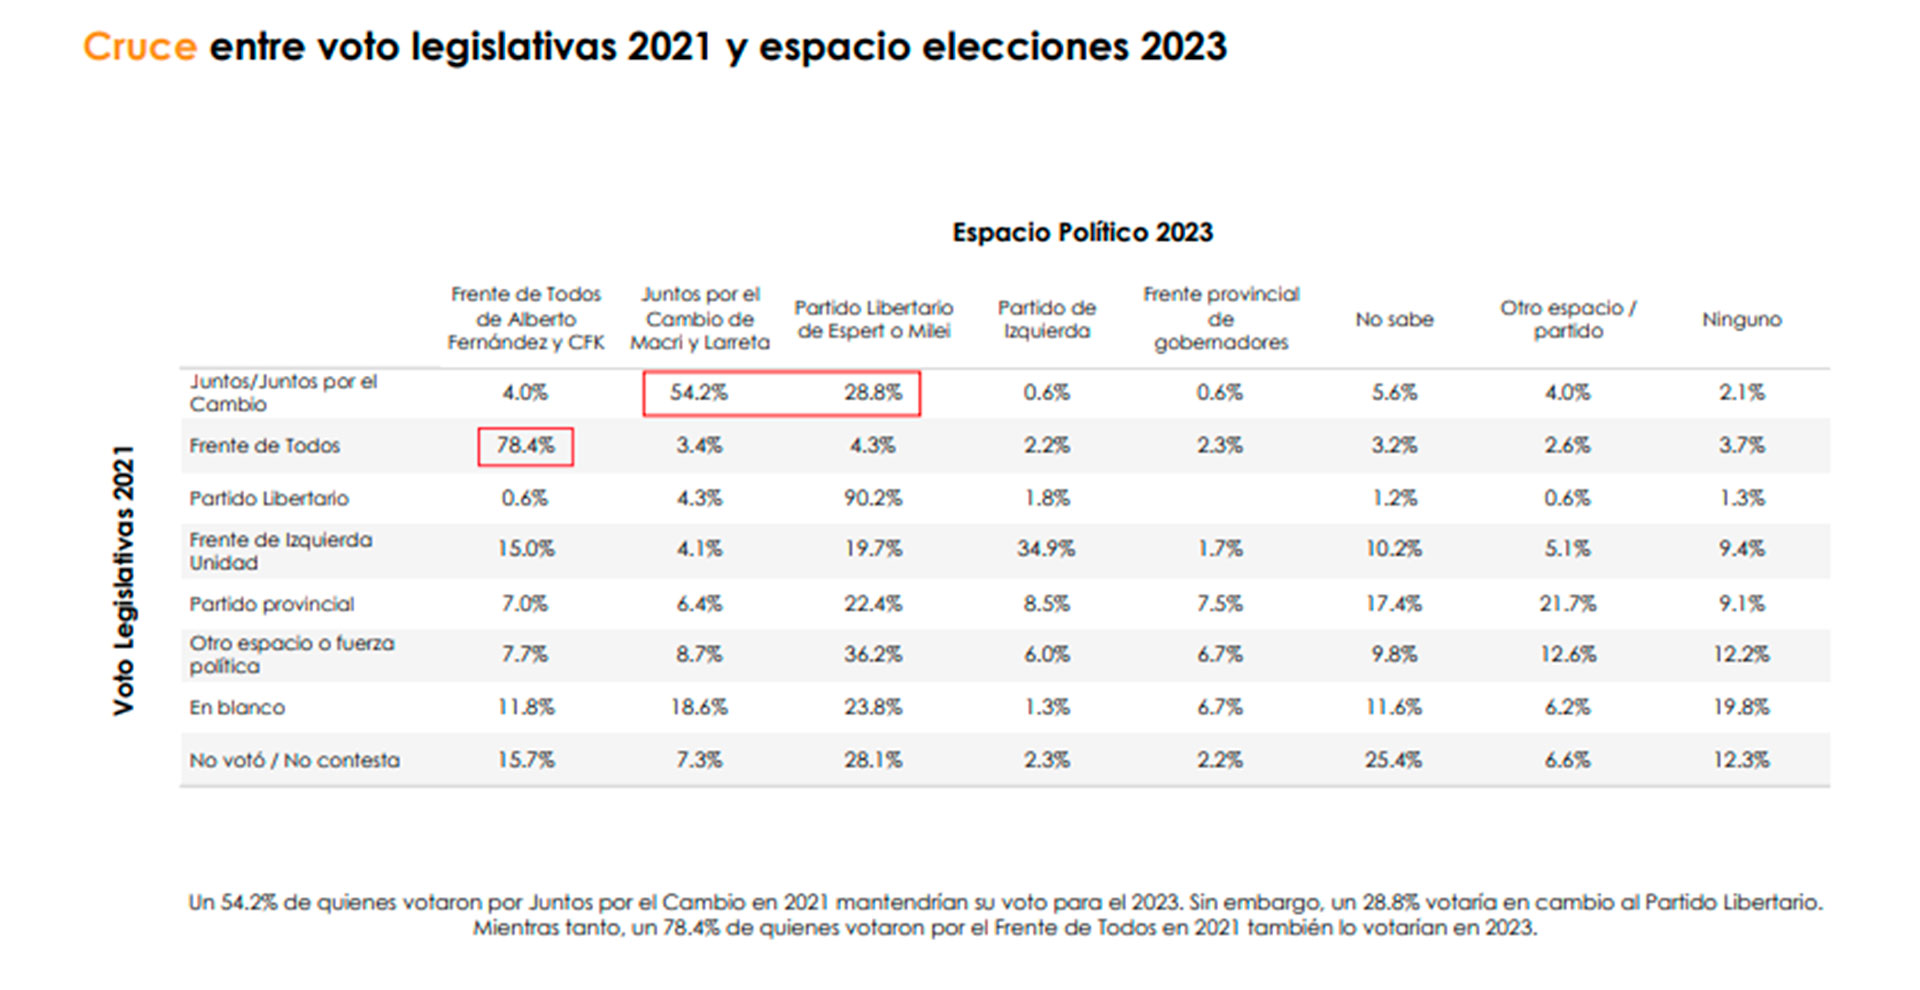 El 28,8% de aquellos que votaron a Juntos por el Cambio en el 2021 apoyaría a Javier Milei en el 2023